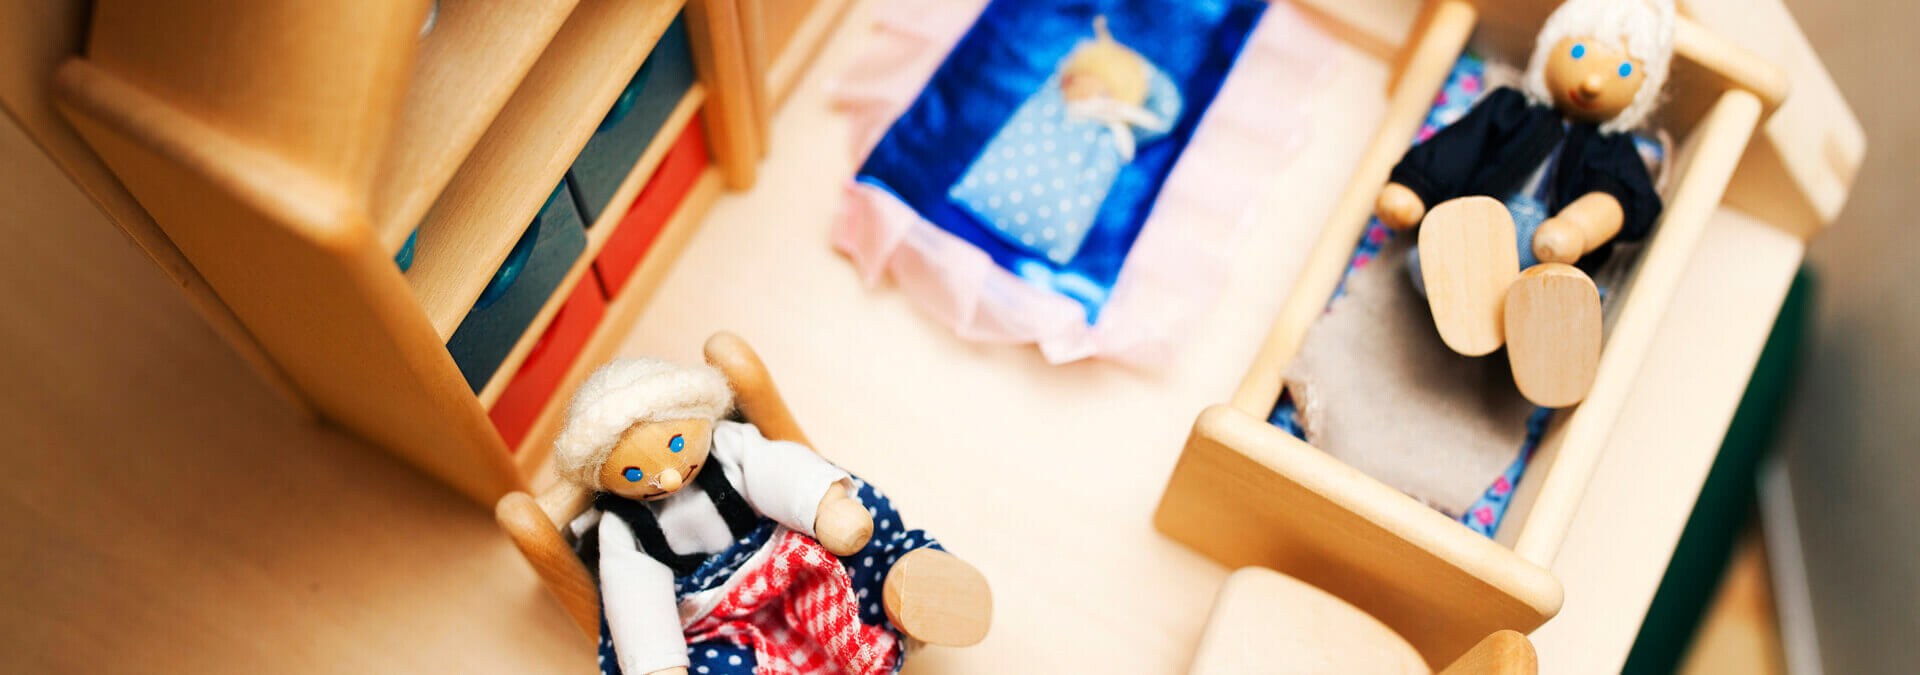 Et dukkehus i Børnetræet for børn på krisecenter